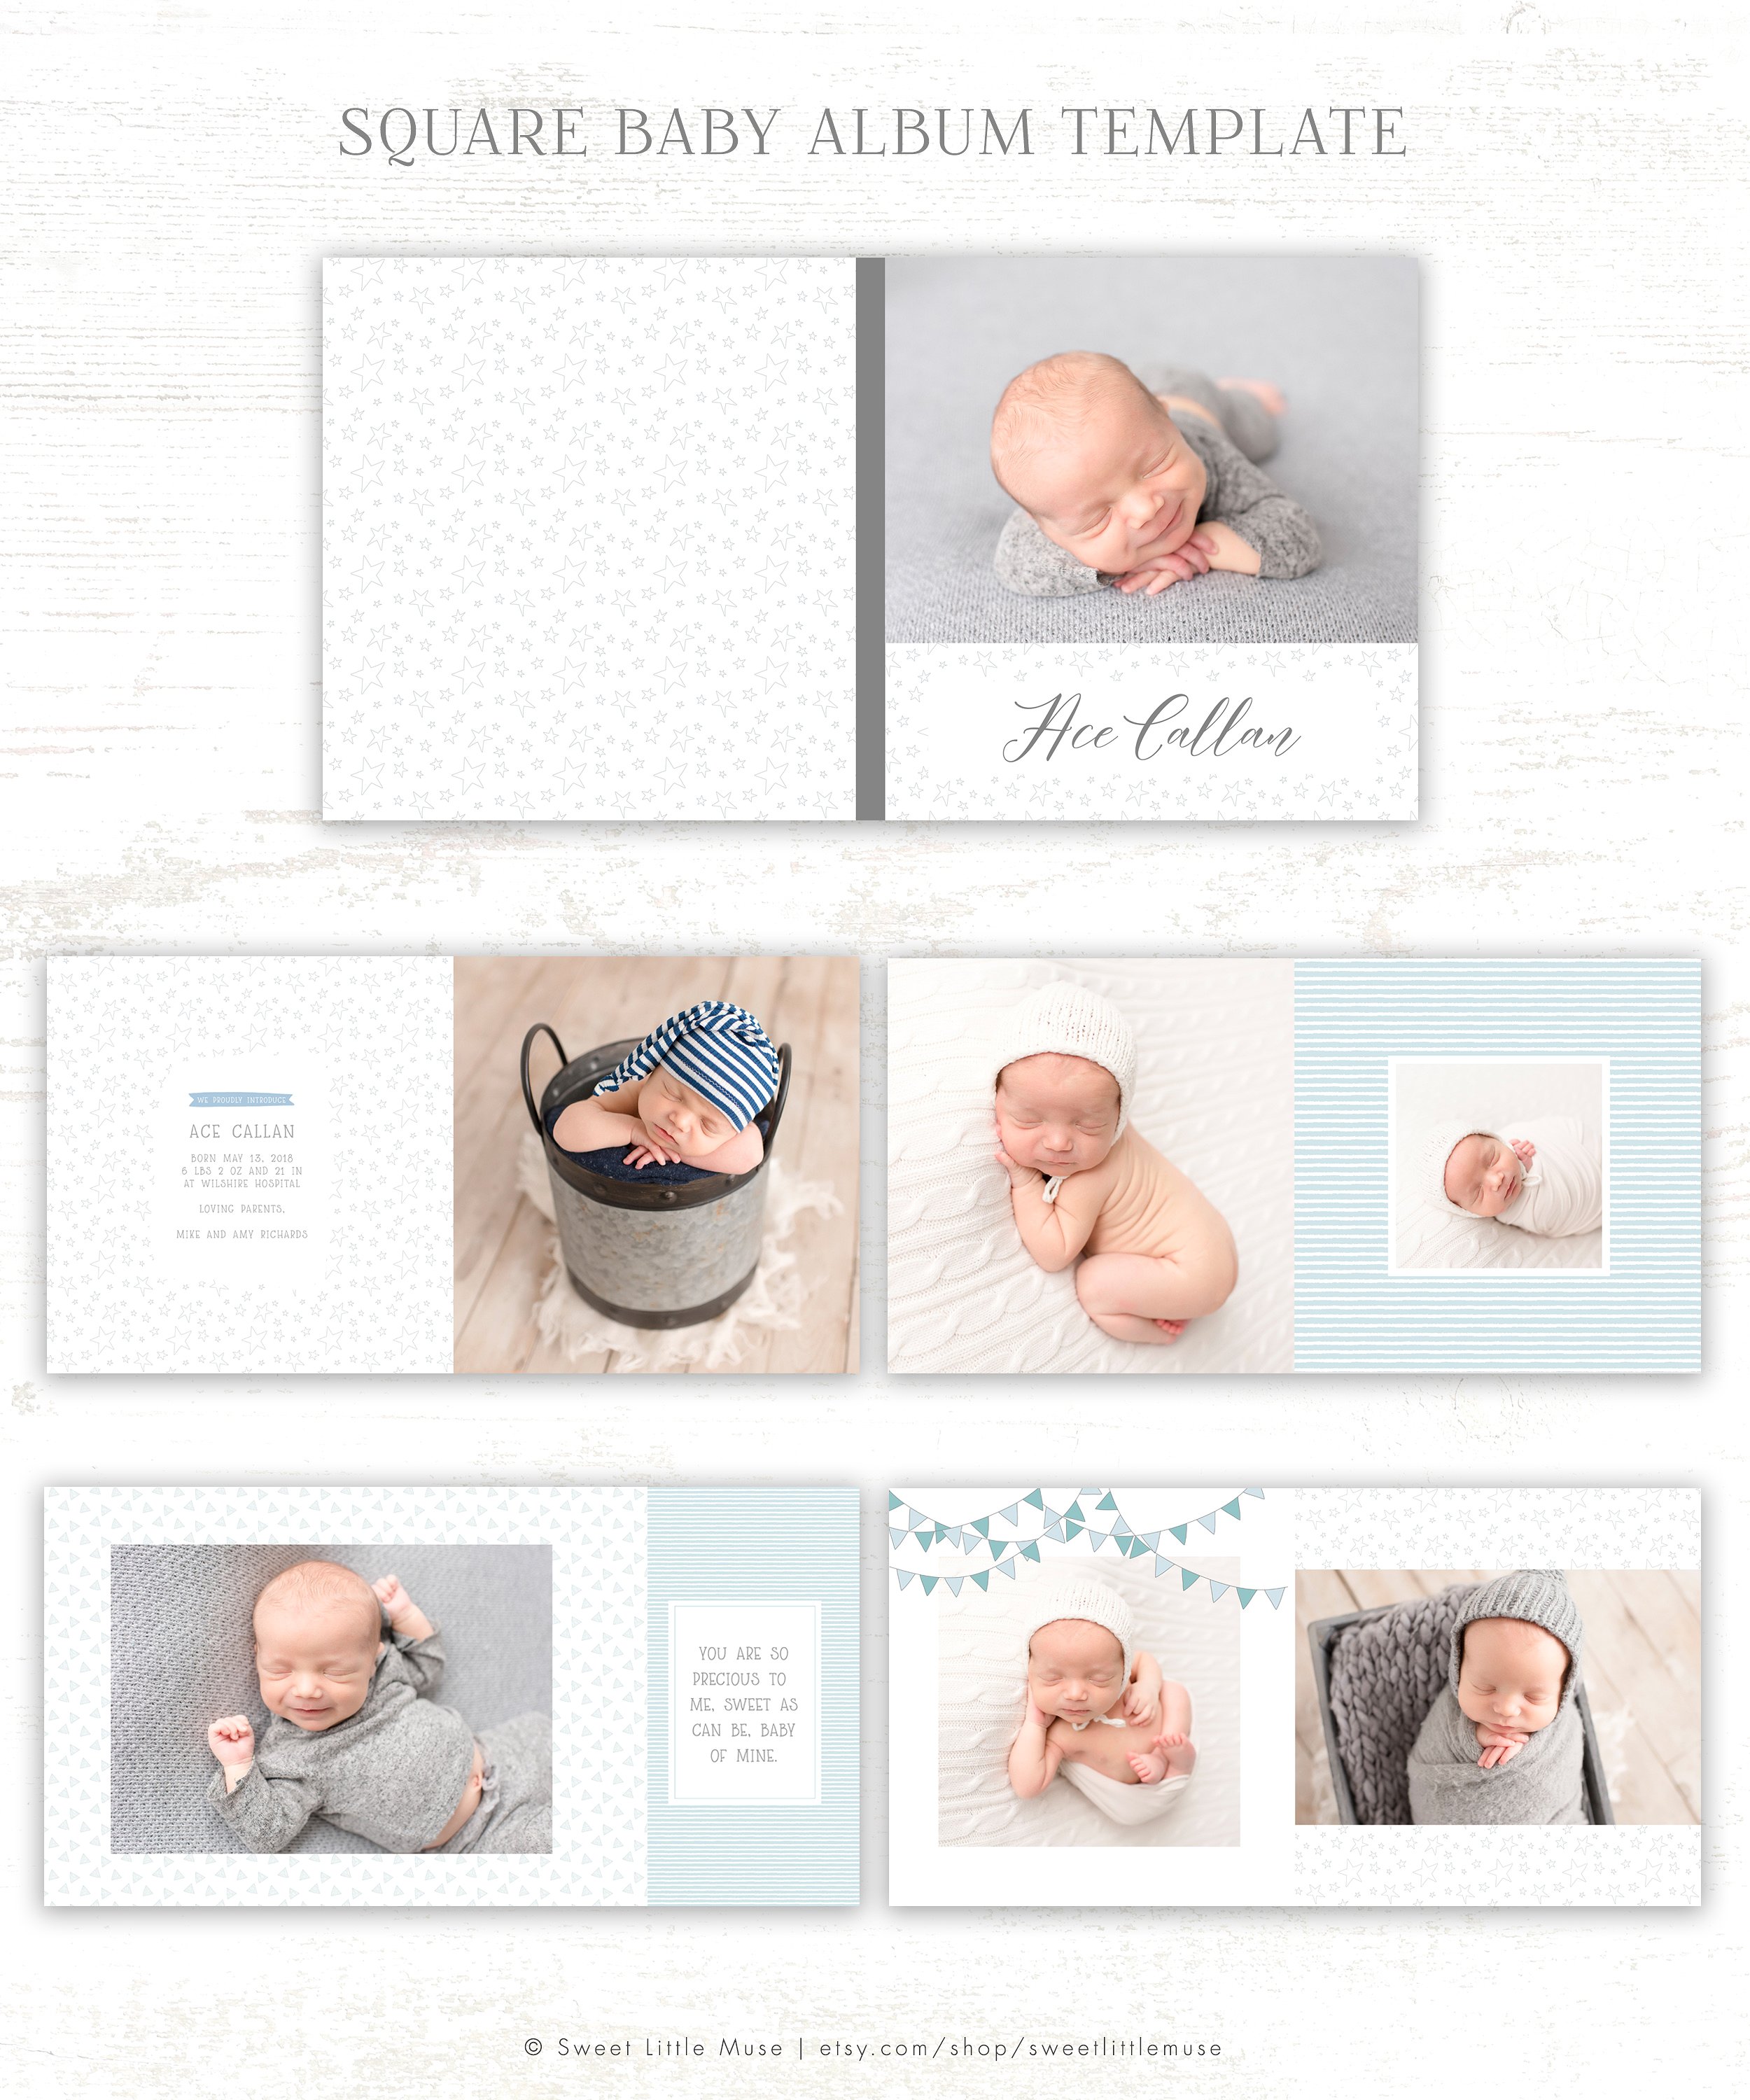 初生婴儿艺术照相册模板 Baby Boy Album Template插图